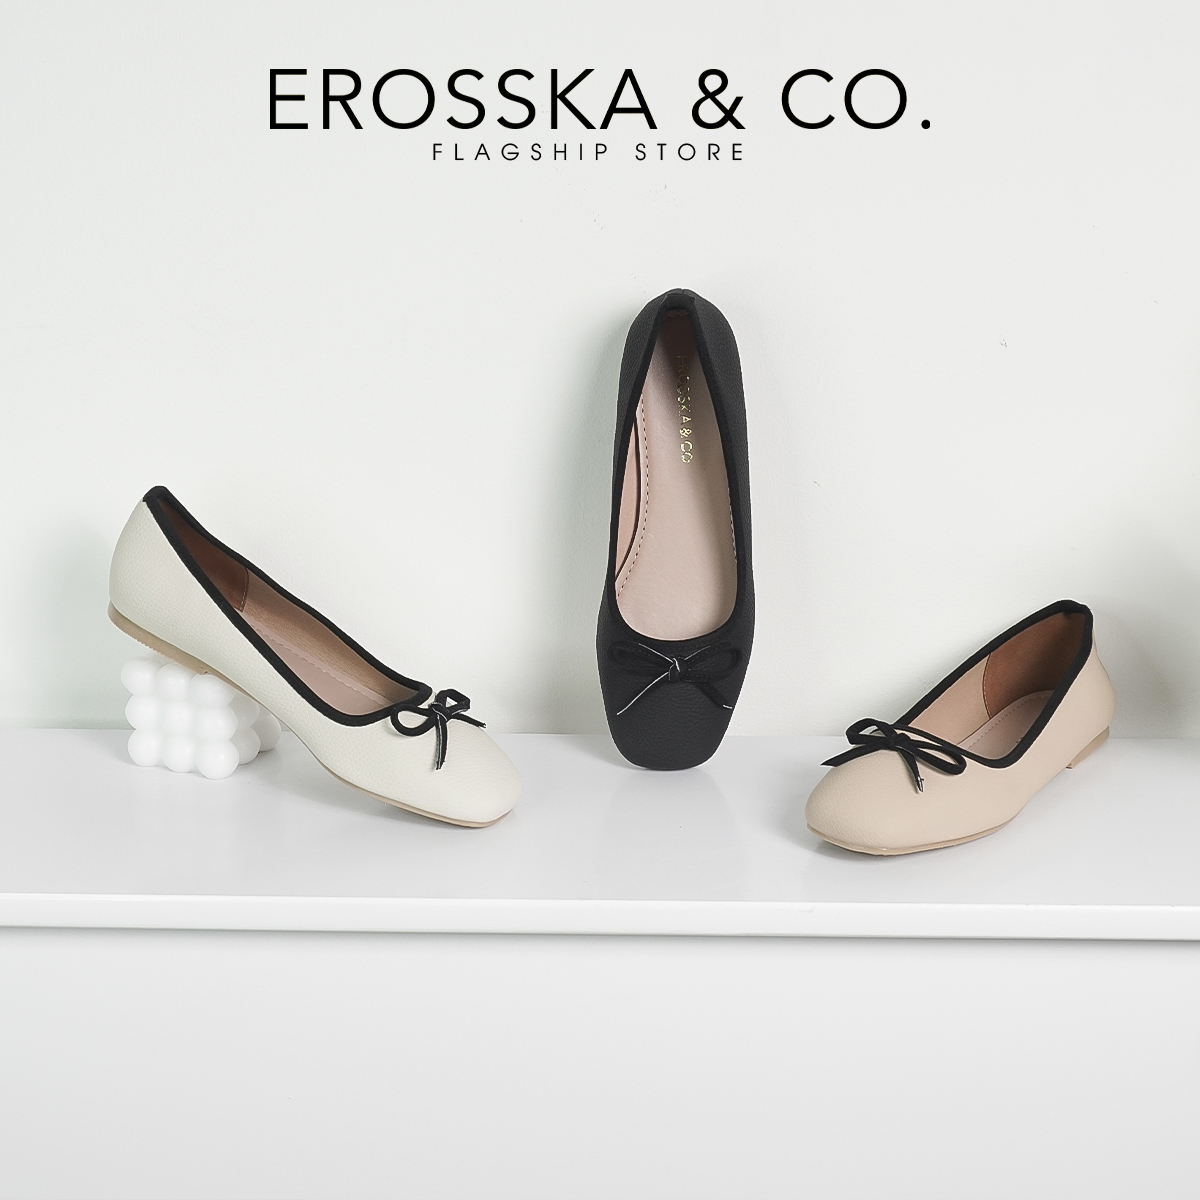 Erosska - Giày búp bê nữ đế bệt kiểu dáng đơn giản gắn nơ - EF017